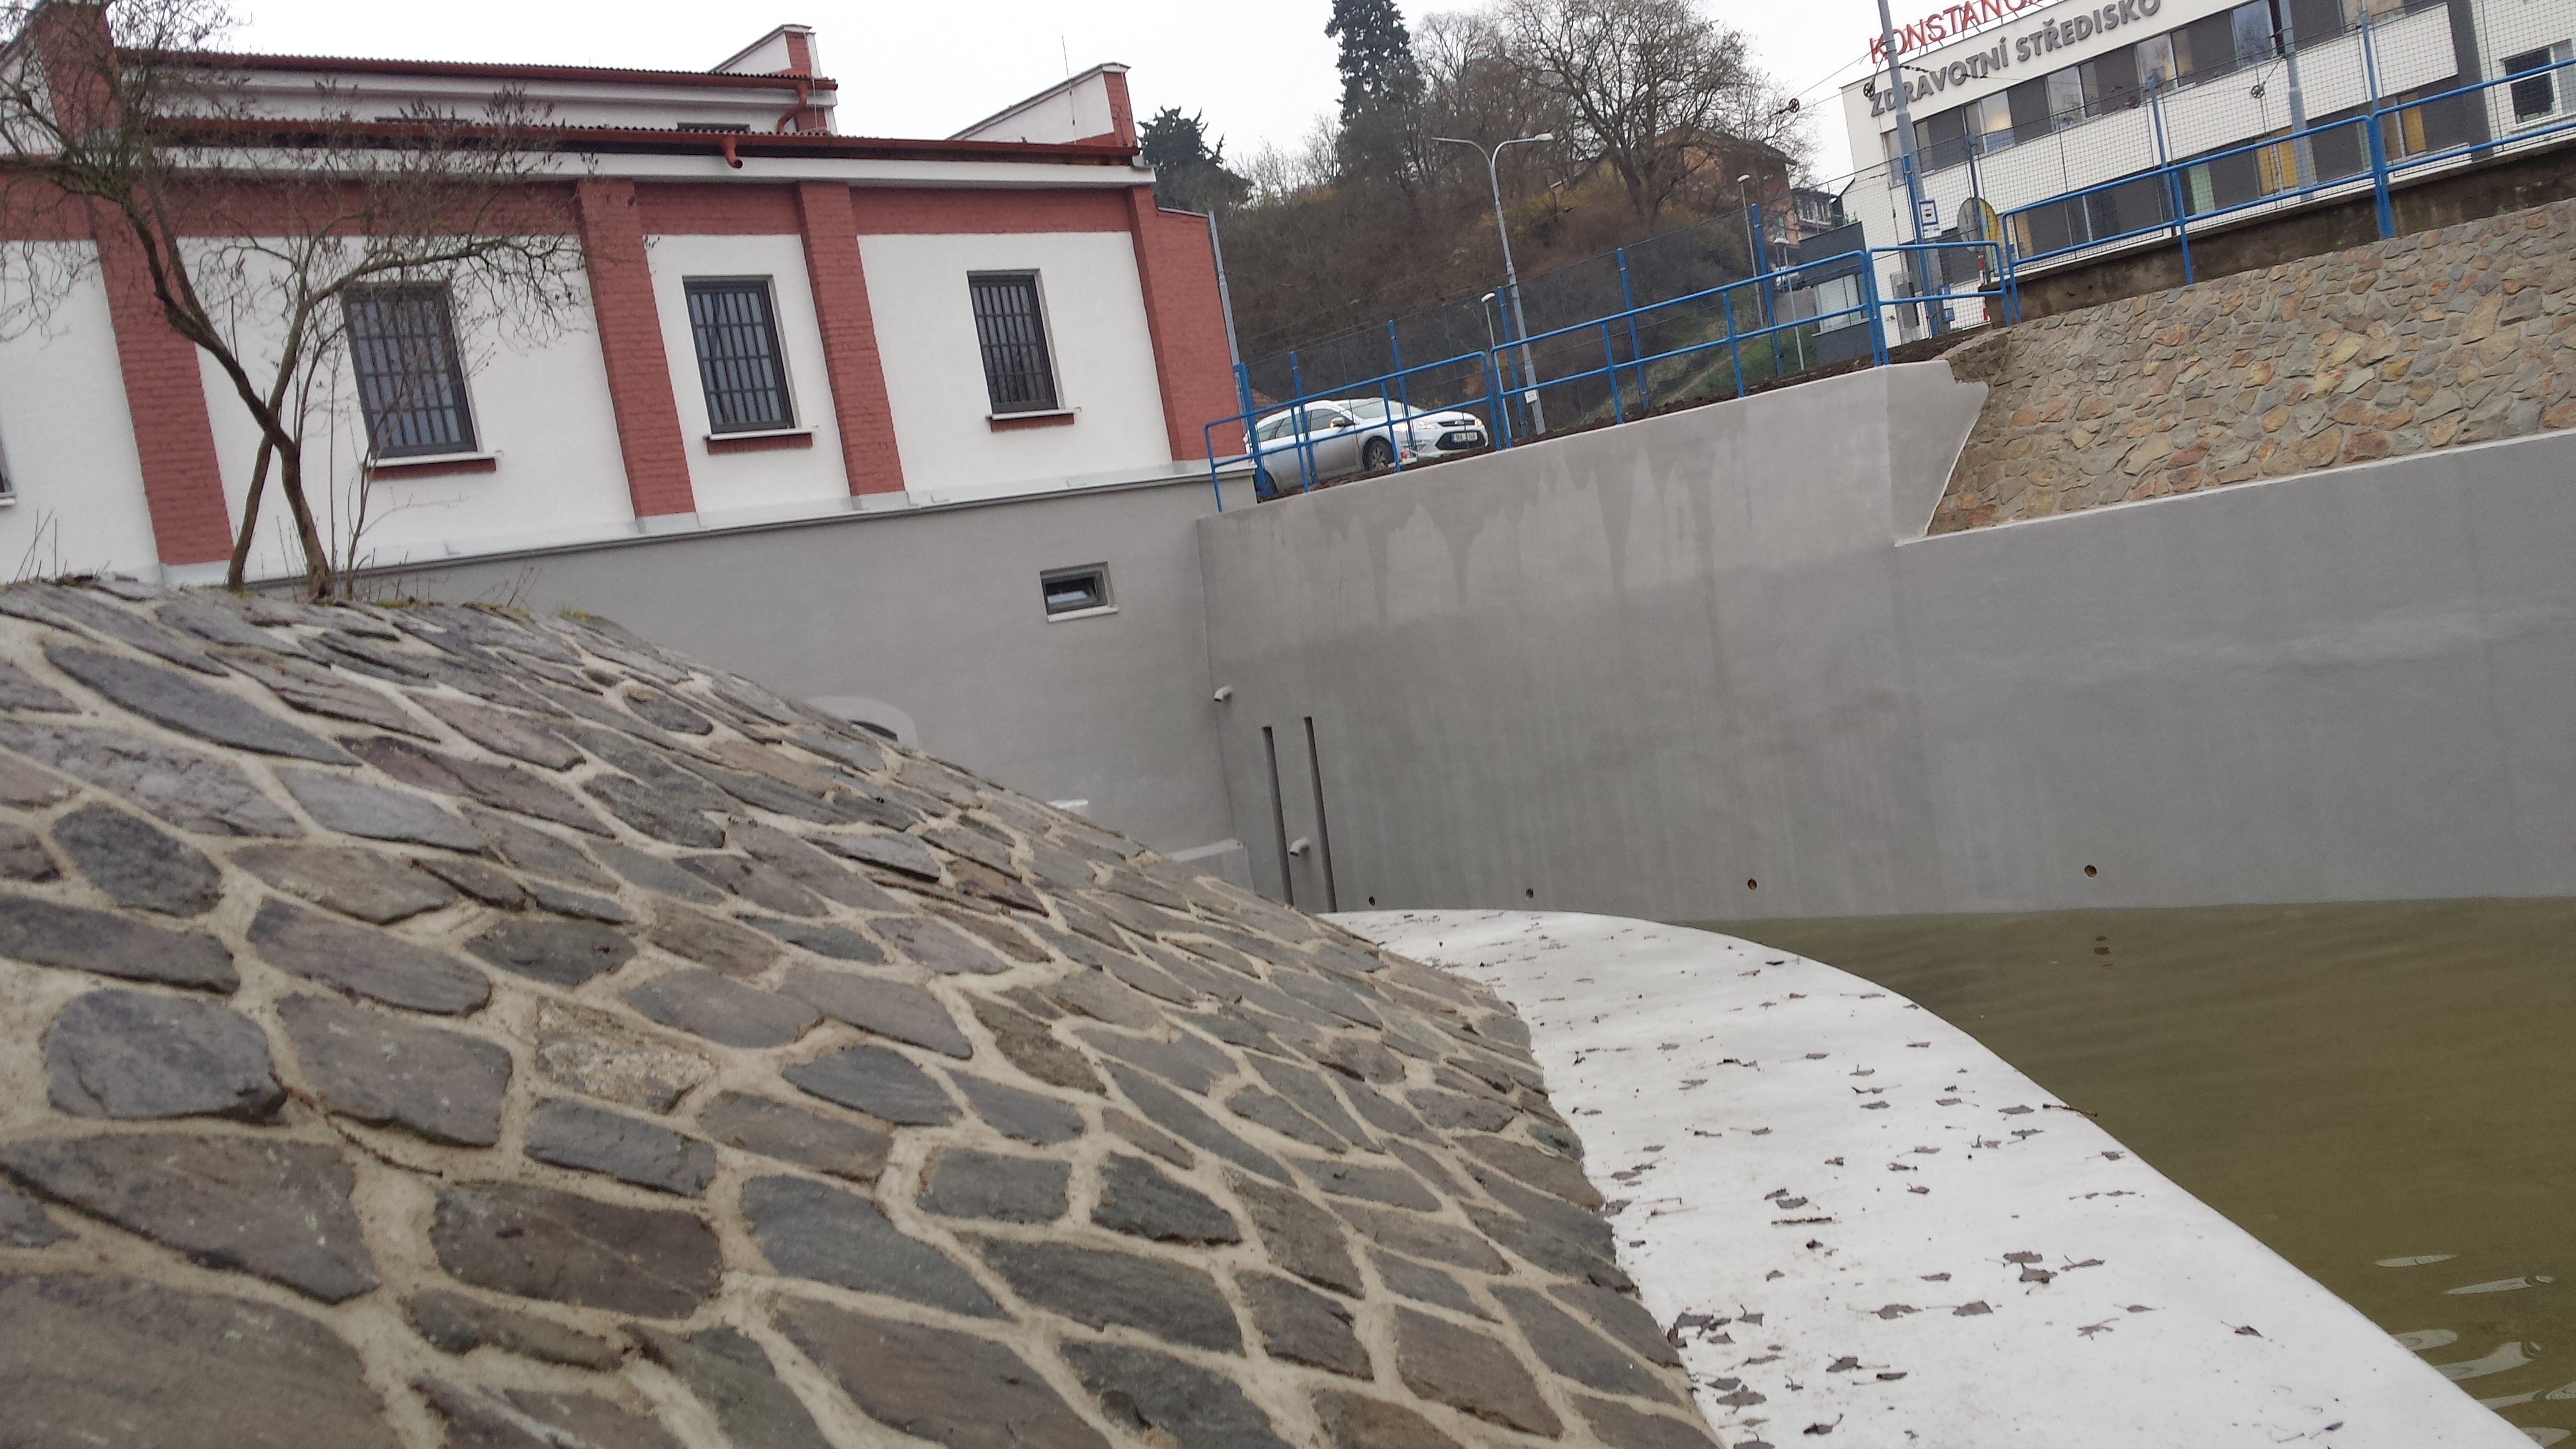 Brno - Komín, malá vodní elektrárna